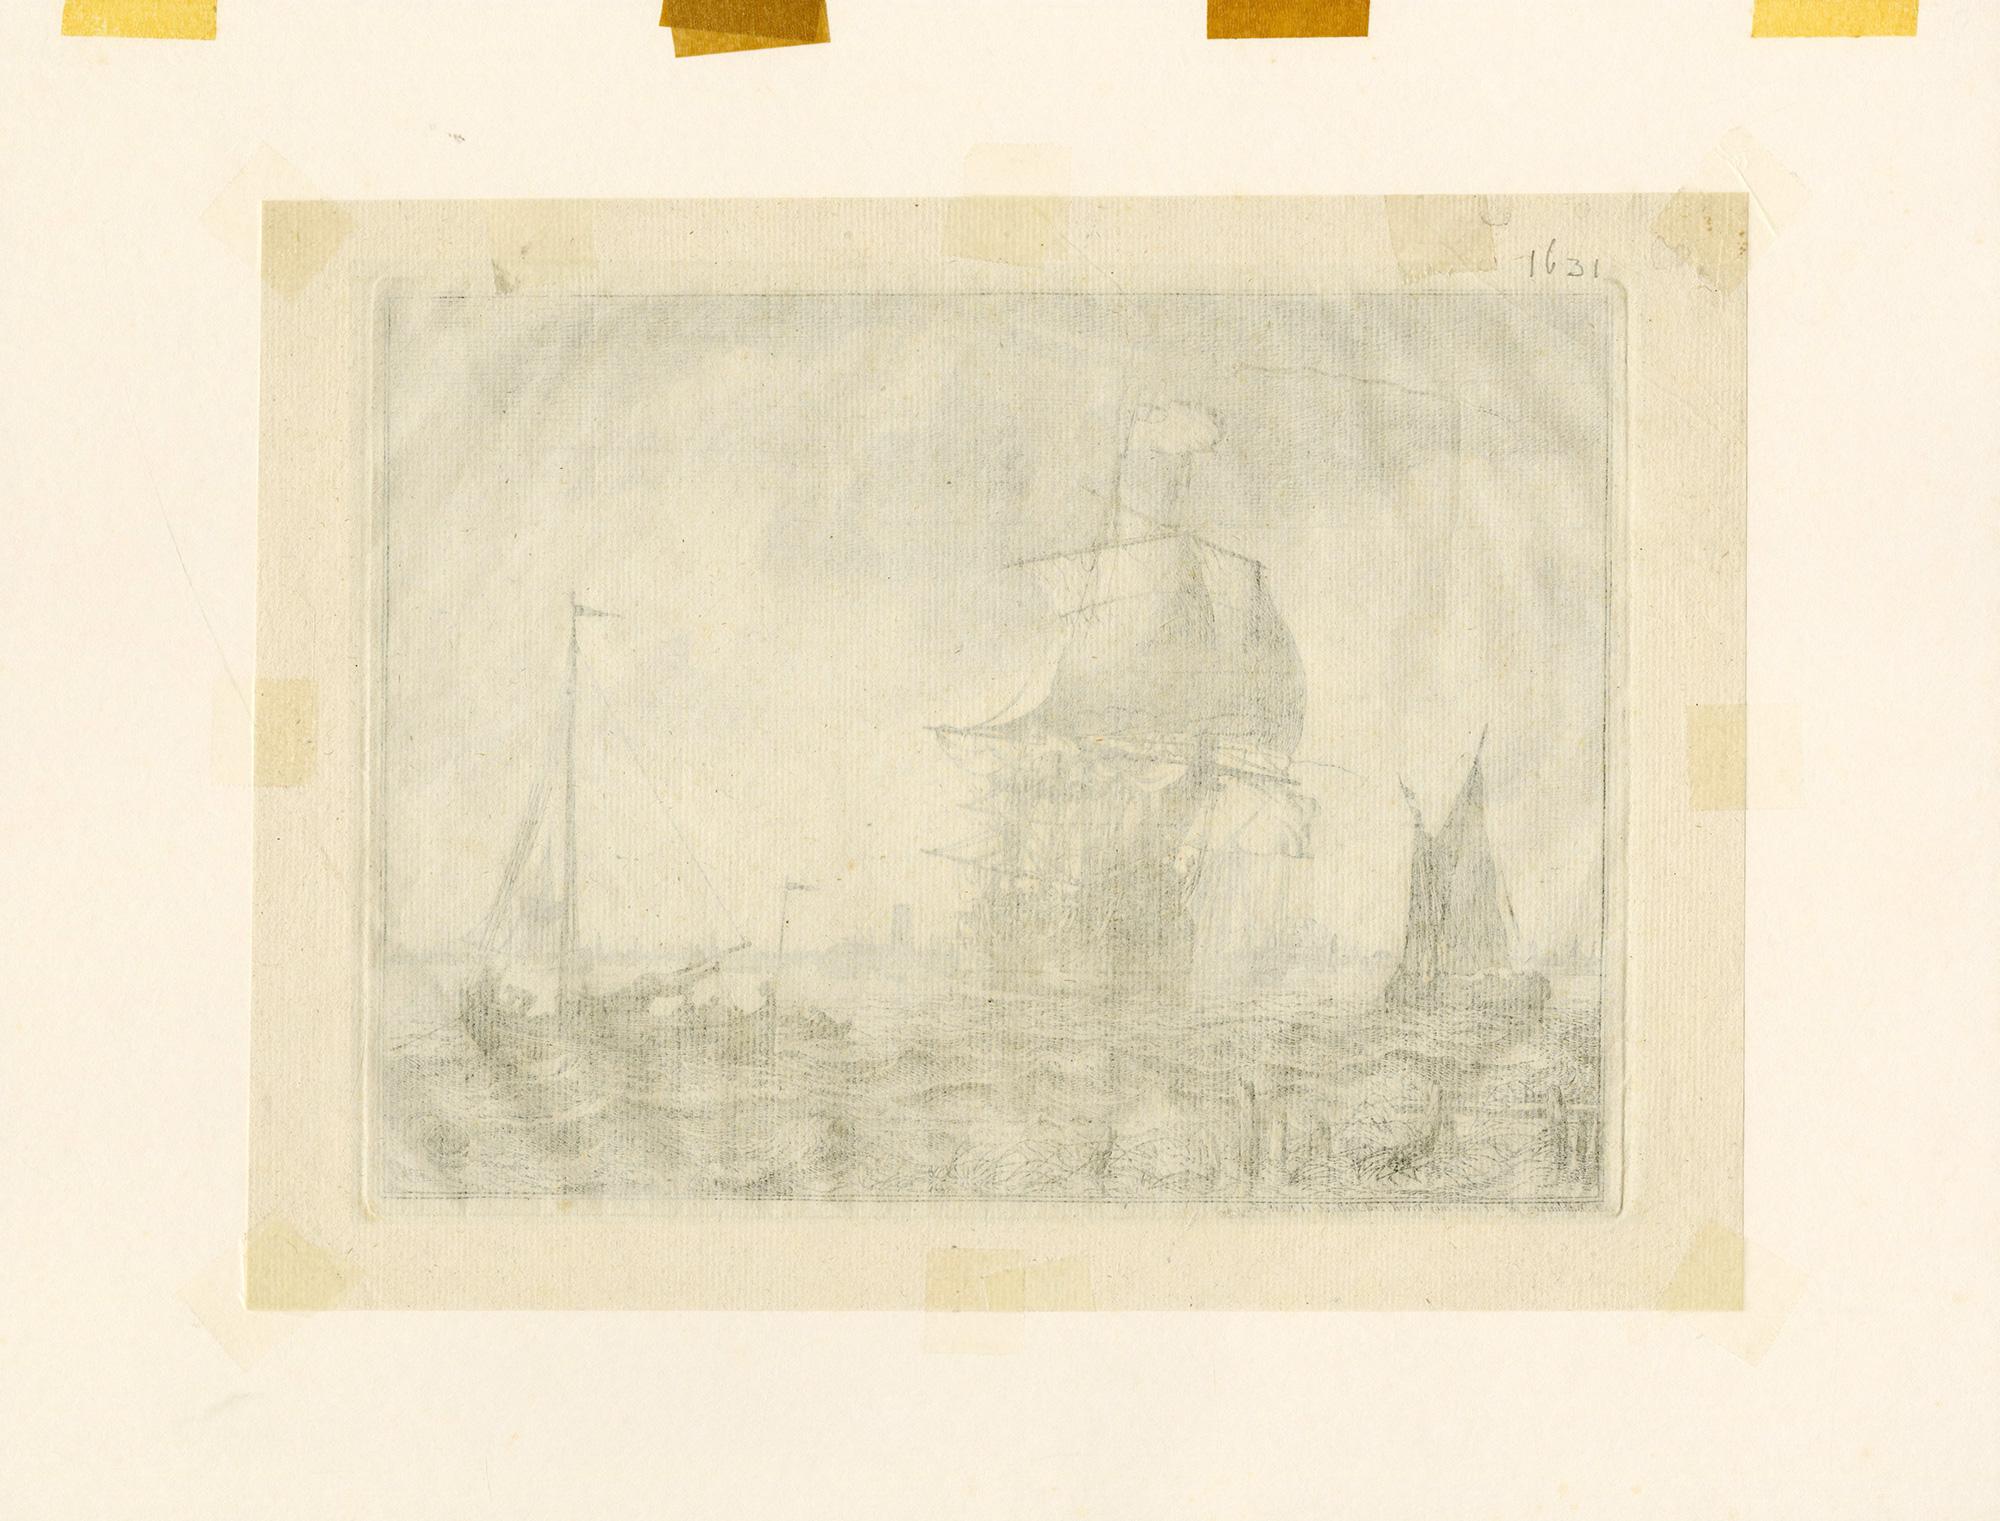 Eine schöne nautische Szene aus dem 18. Jahrhundert voller Bewegung und Aktivität. 
Eine Radierung aus der Serie von 10 lebhaften nautischen Szenen mit dem Titel Seascapes. Dieses Bild zeigt vier Schiffe, von links nach rechts: ein Binnenschiff mit